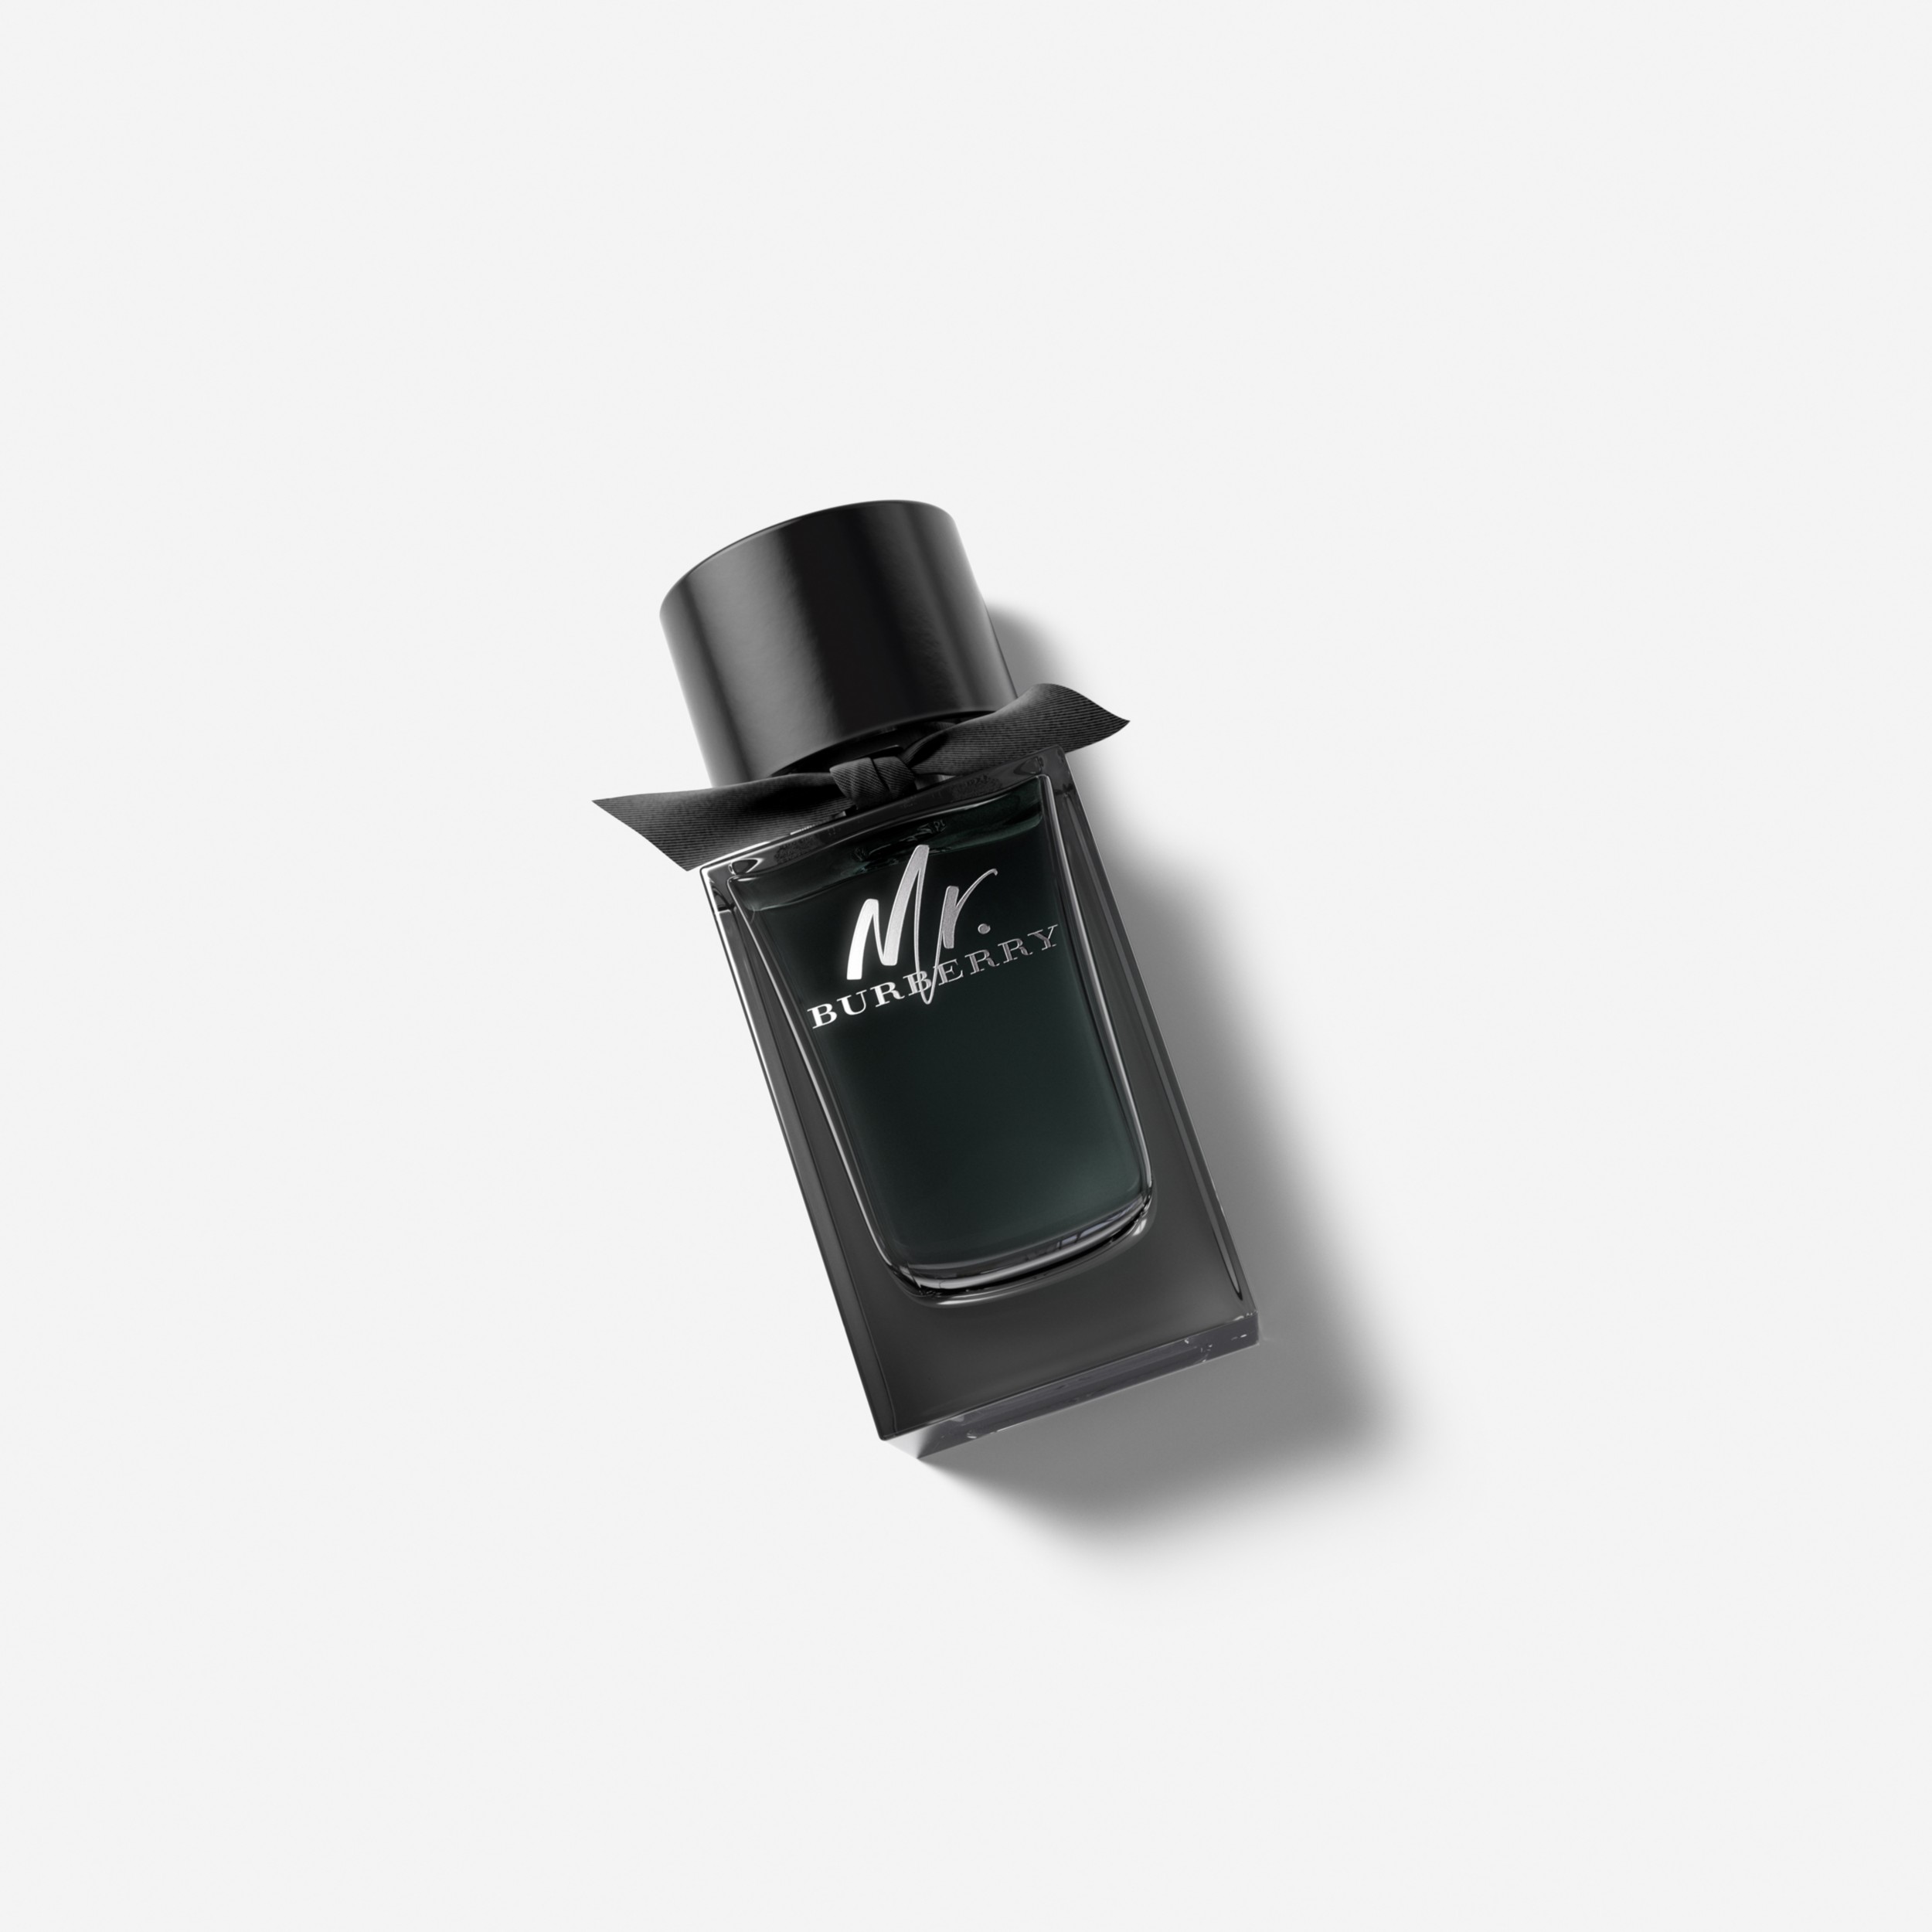 Burberry® Mr. - Eau Parfum 100ml de | Burberry Men Official